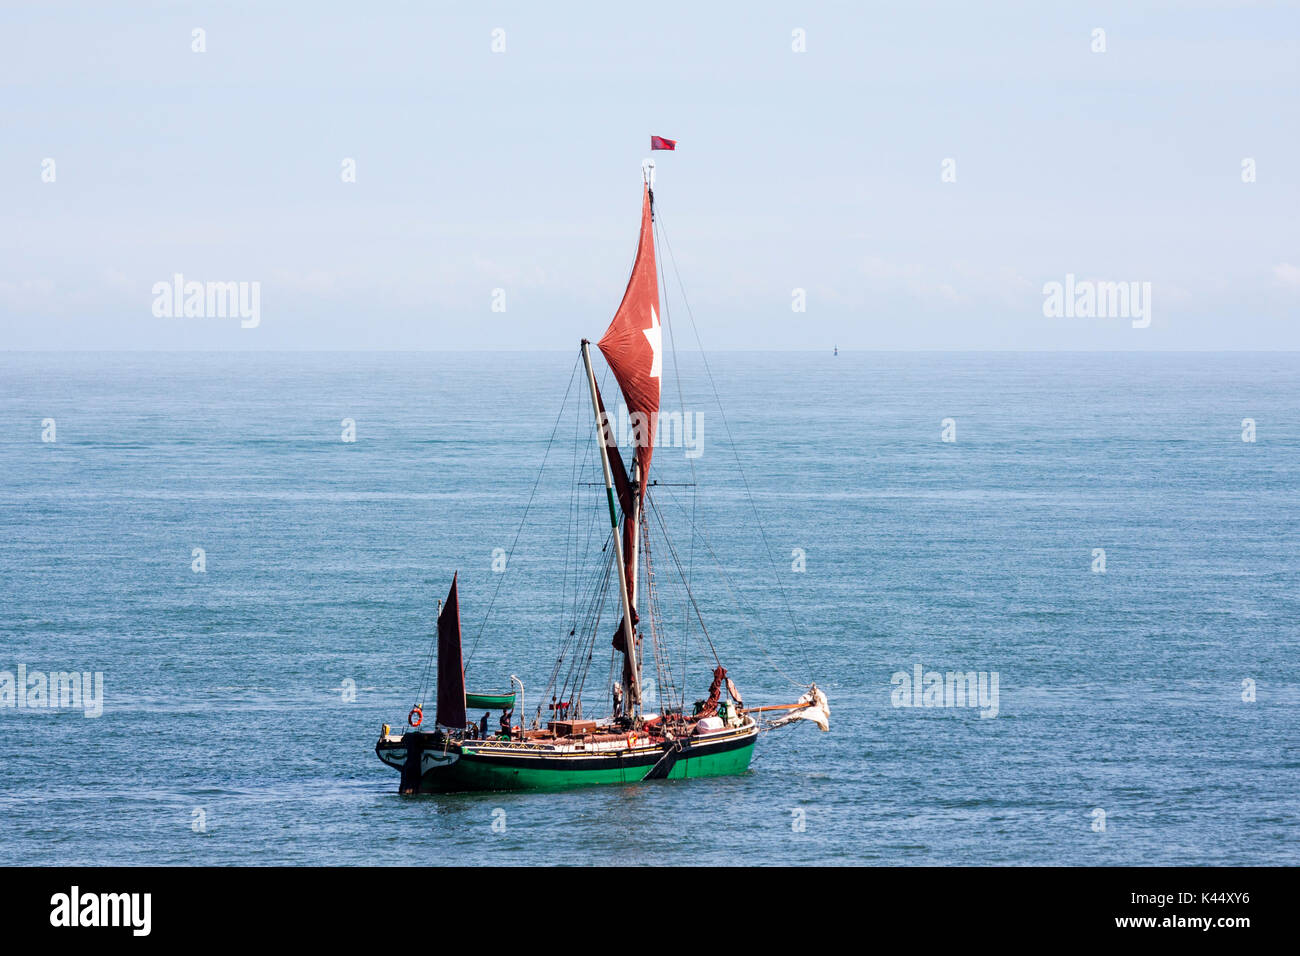 Inghilterra, Broadstairs. Il Tamigi Barge vela in mare. Distante shot. Montante singolo battello sullo sfondo del mare e cielo nebuloso. Foto Stock